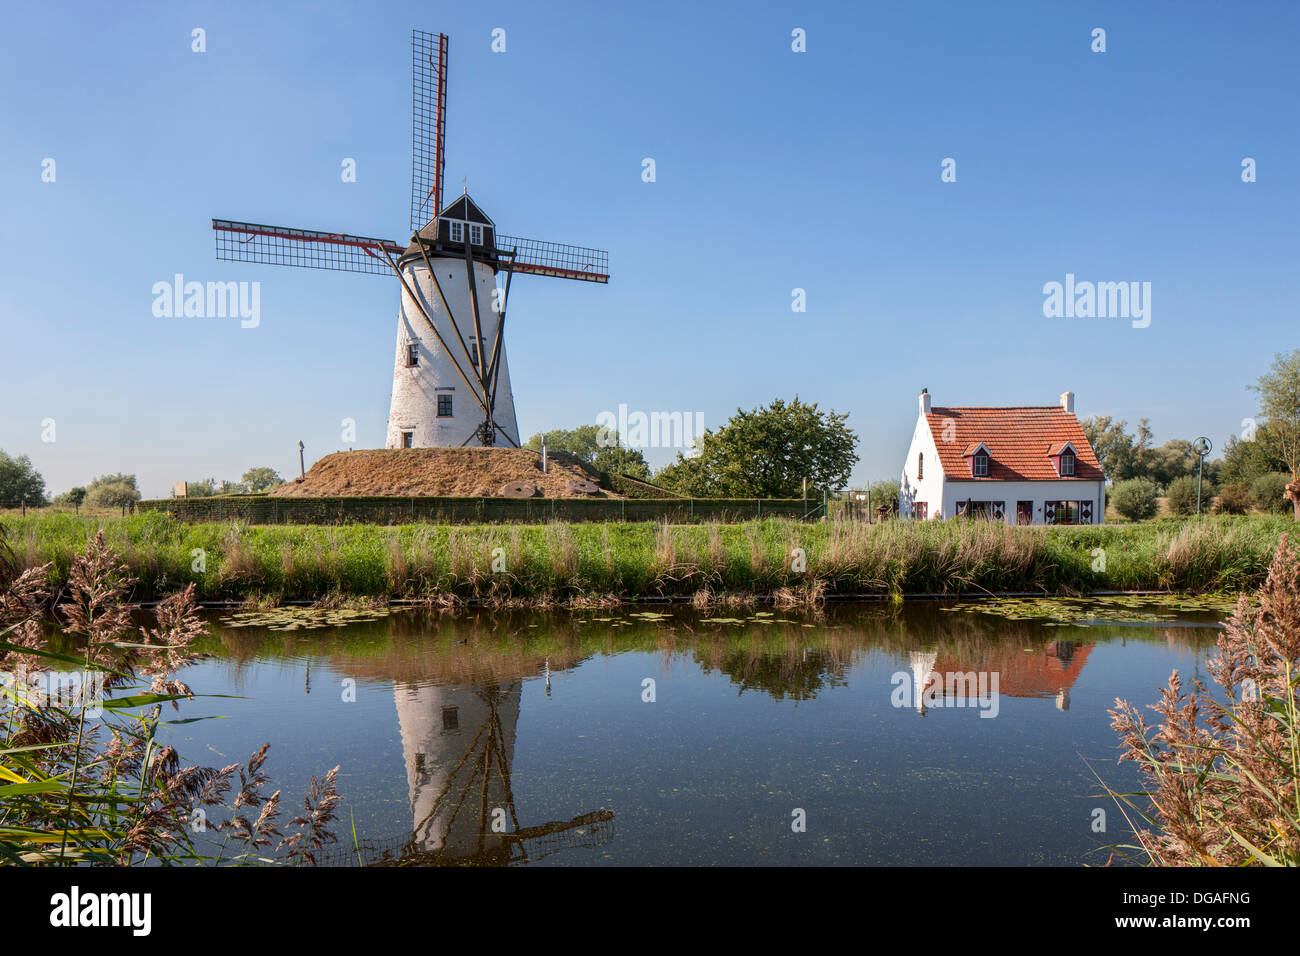 Le moulin à vent traditionnel Schellemolen, le long du Canal de Damme / Damse Vaart, Flandre occidentale, Belgique Banque D'Images